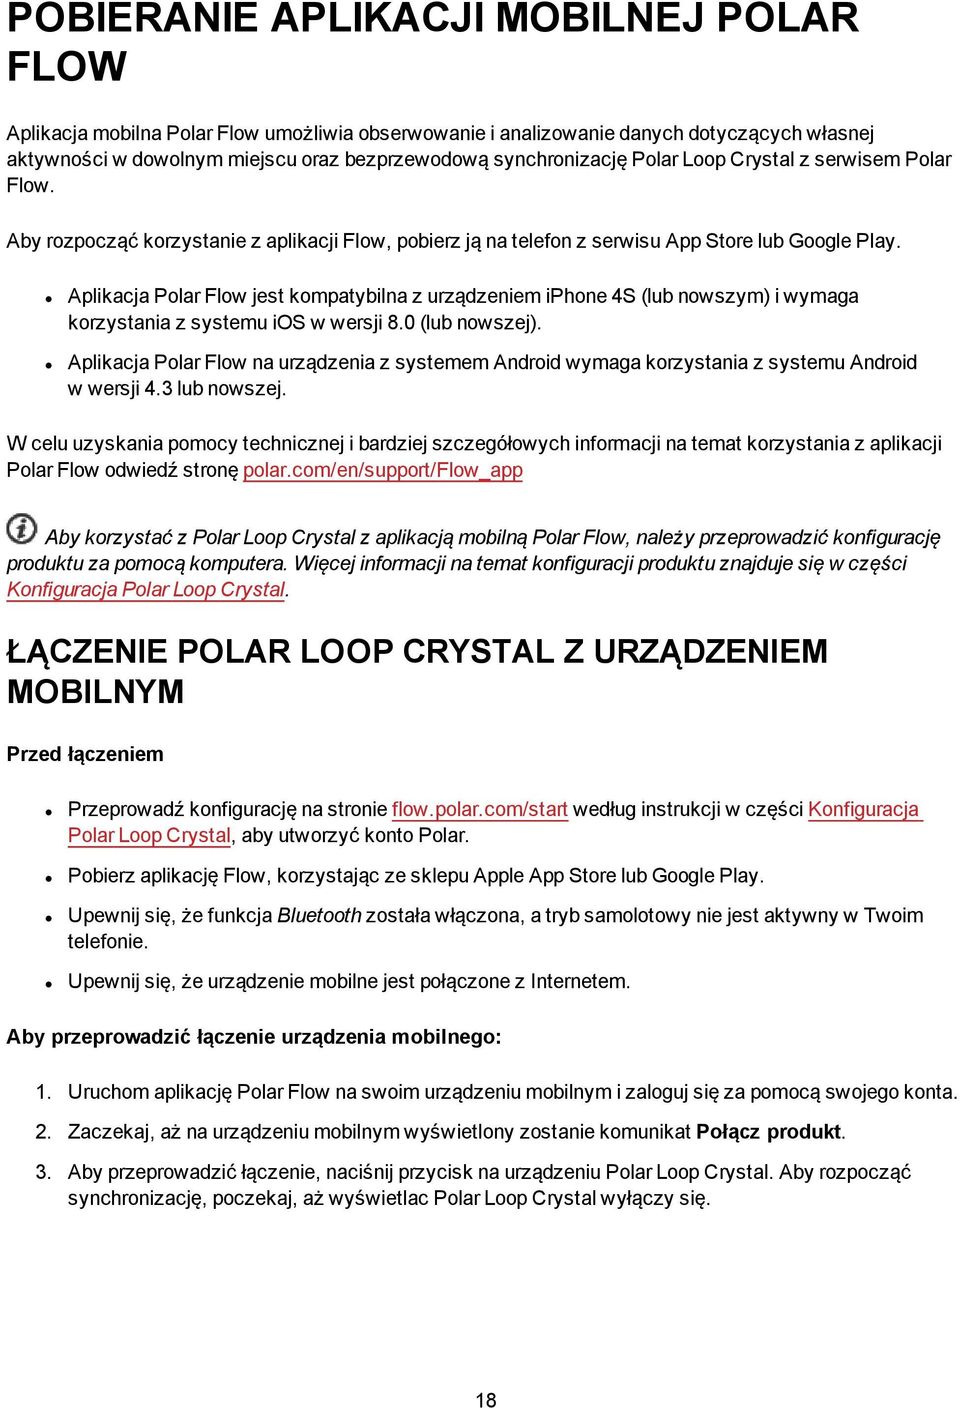 Aplikacja Polar Flow jest kompatybilna z urządzeniem iphone 4S (lub nowszym) i wymaga korzystania z systemu ios w wersji 8.0 (lub nowszej).